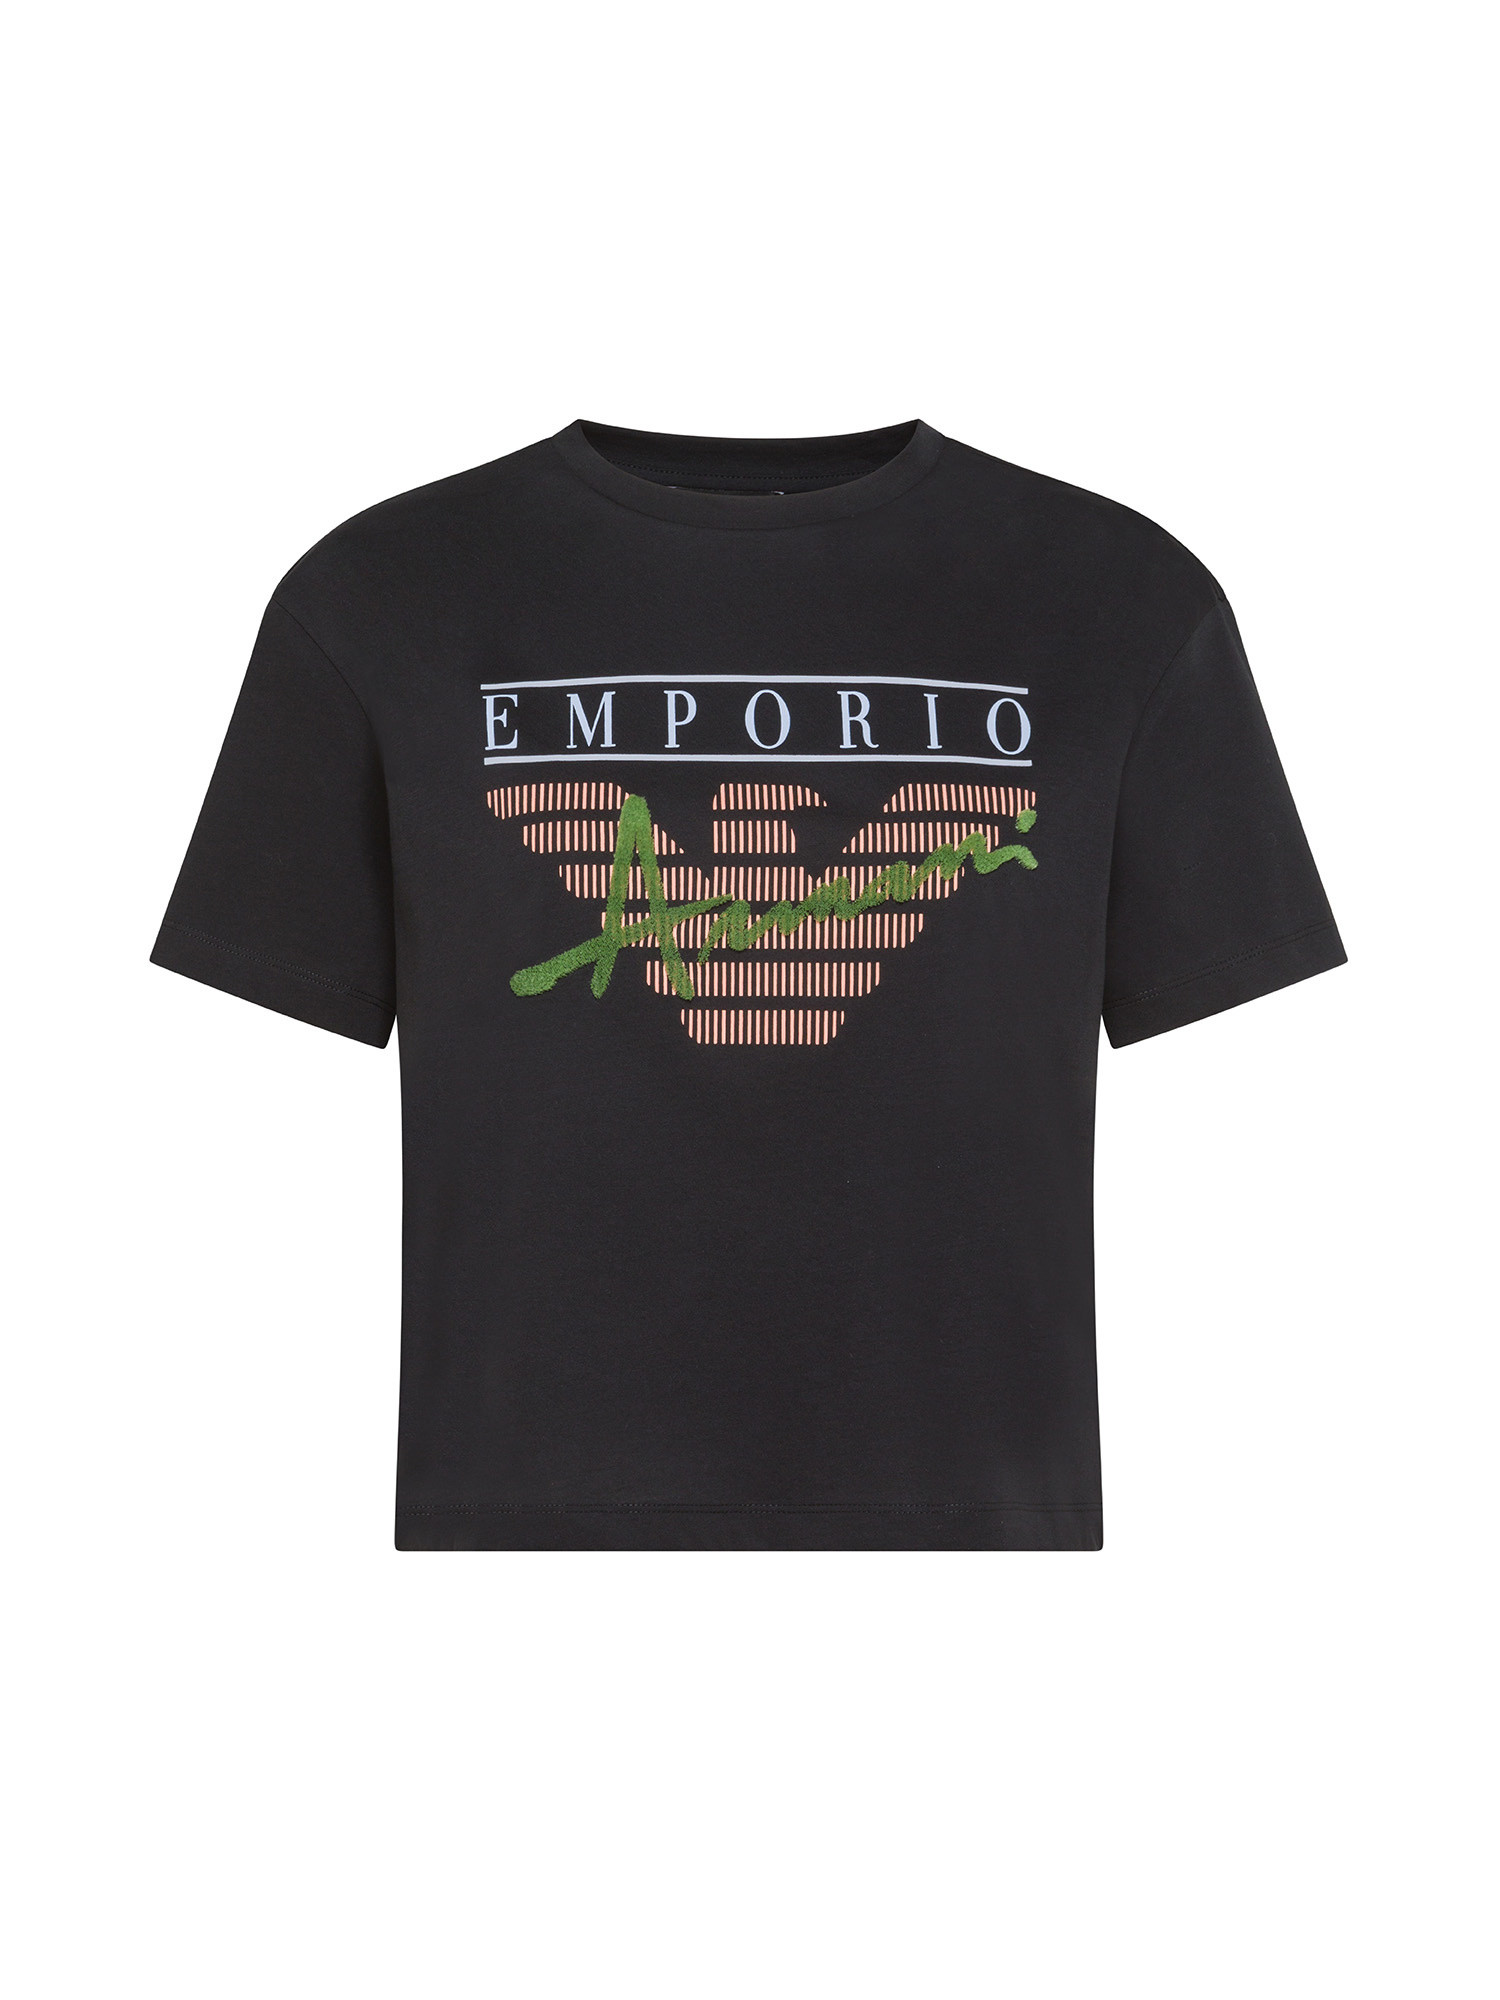 Emporio Armani - T-shirt in cotone con stampa e logo, Nero, large image number 0